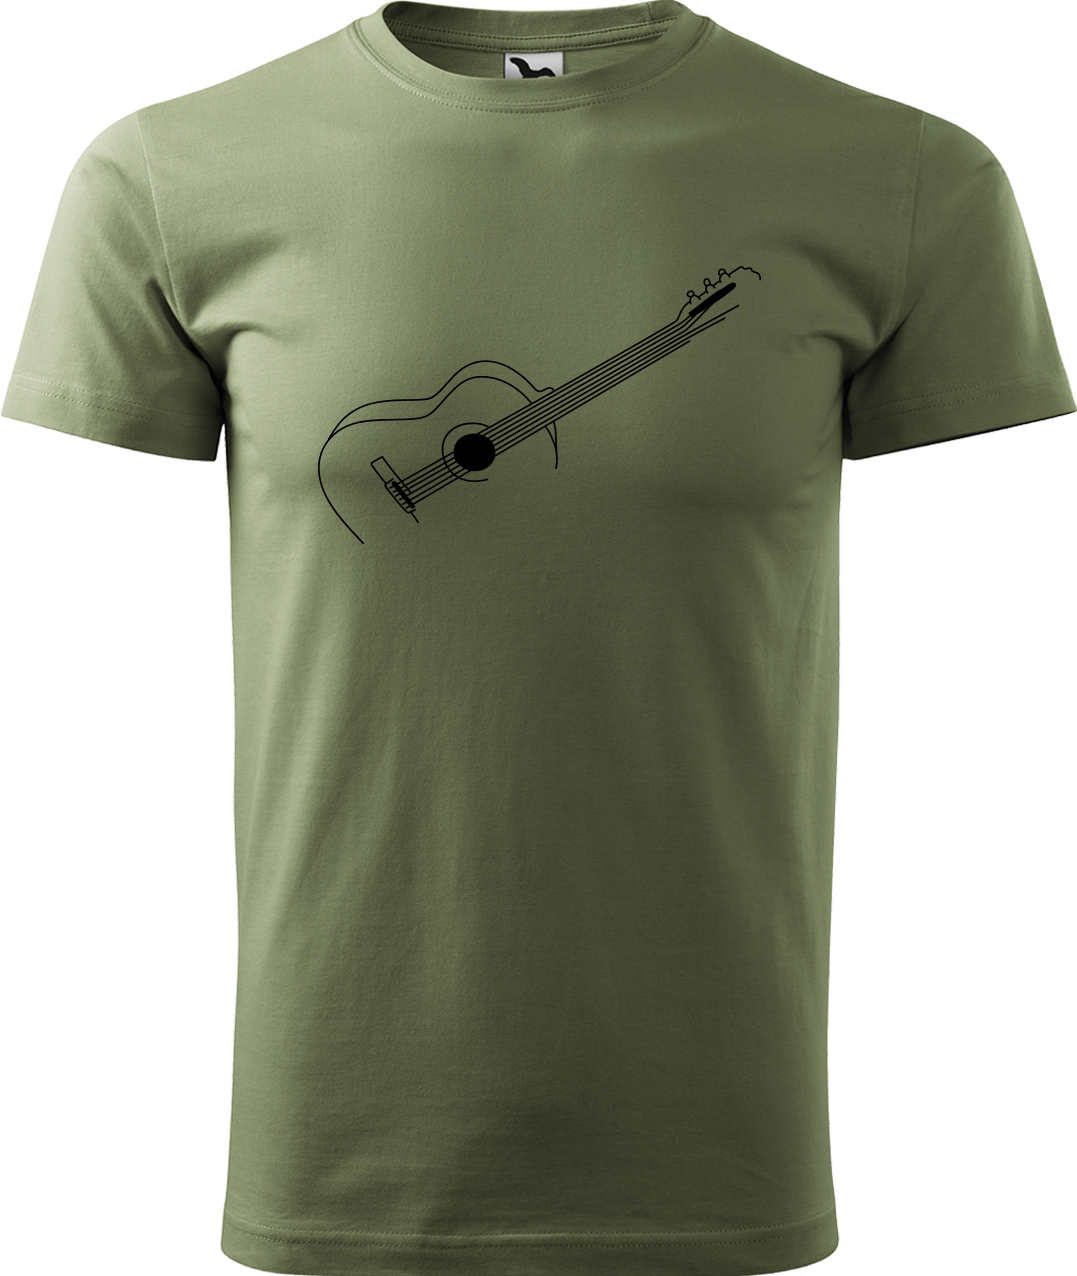 Pánské tričko s kytarou - Stylizovaná kytara Velikost: XL, Barva: Světlá khaki (28), Střih: pánský